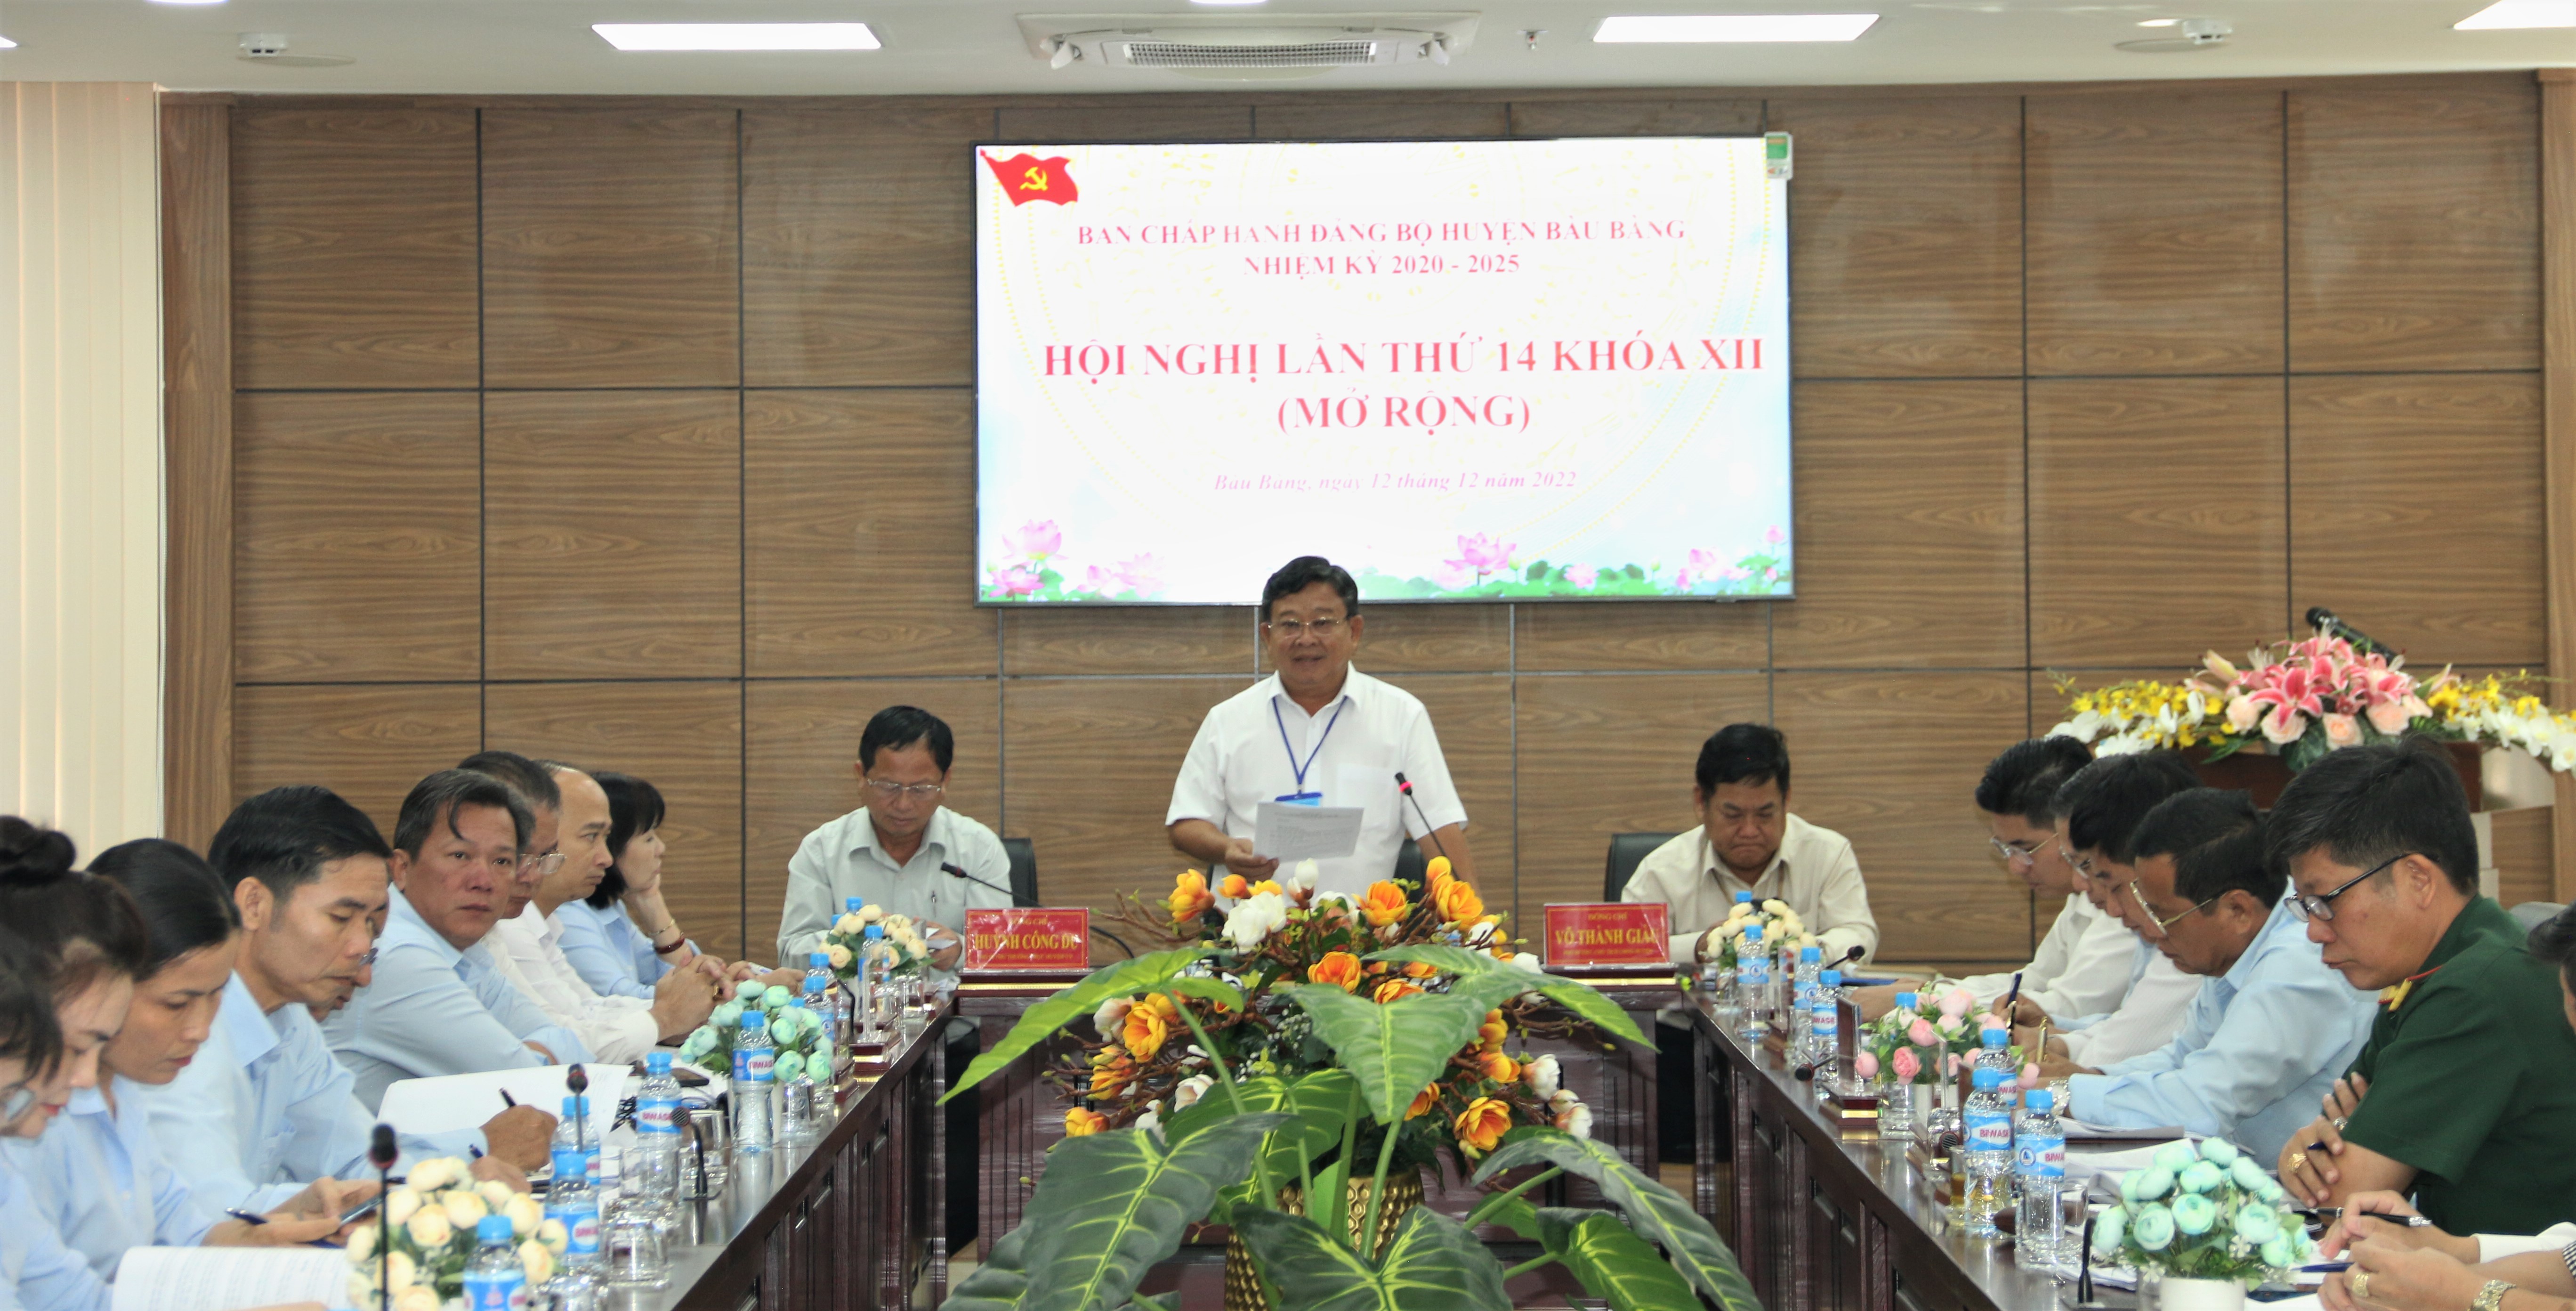 Huyện ủy Bàu Bàng tổ chức Hội nghị Ban chấp hành Đảng bộ lần thứ 14 khóa XII (mở rộng)